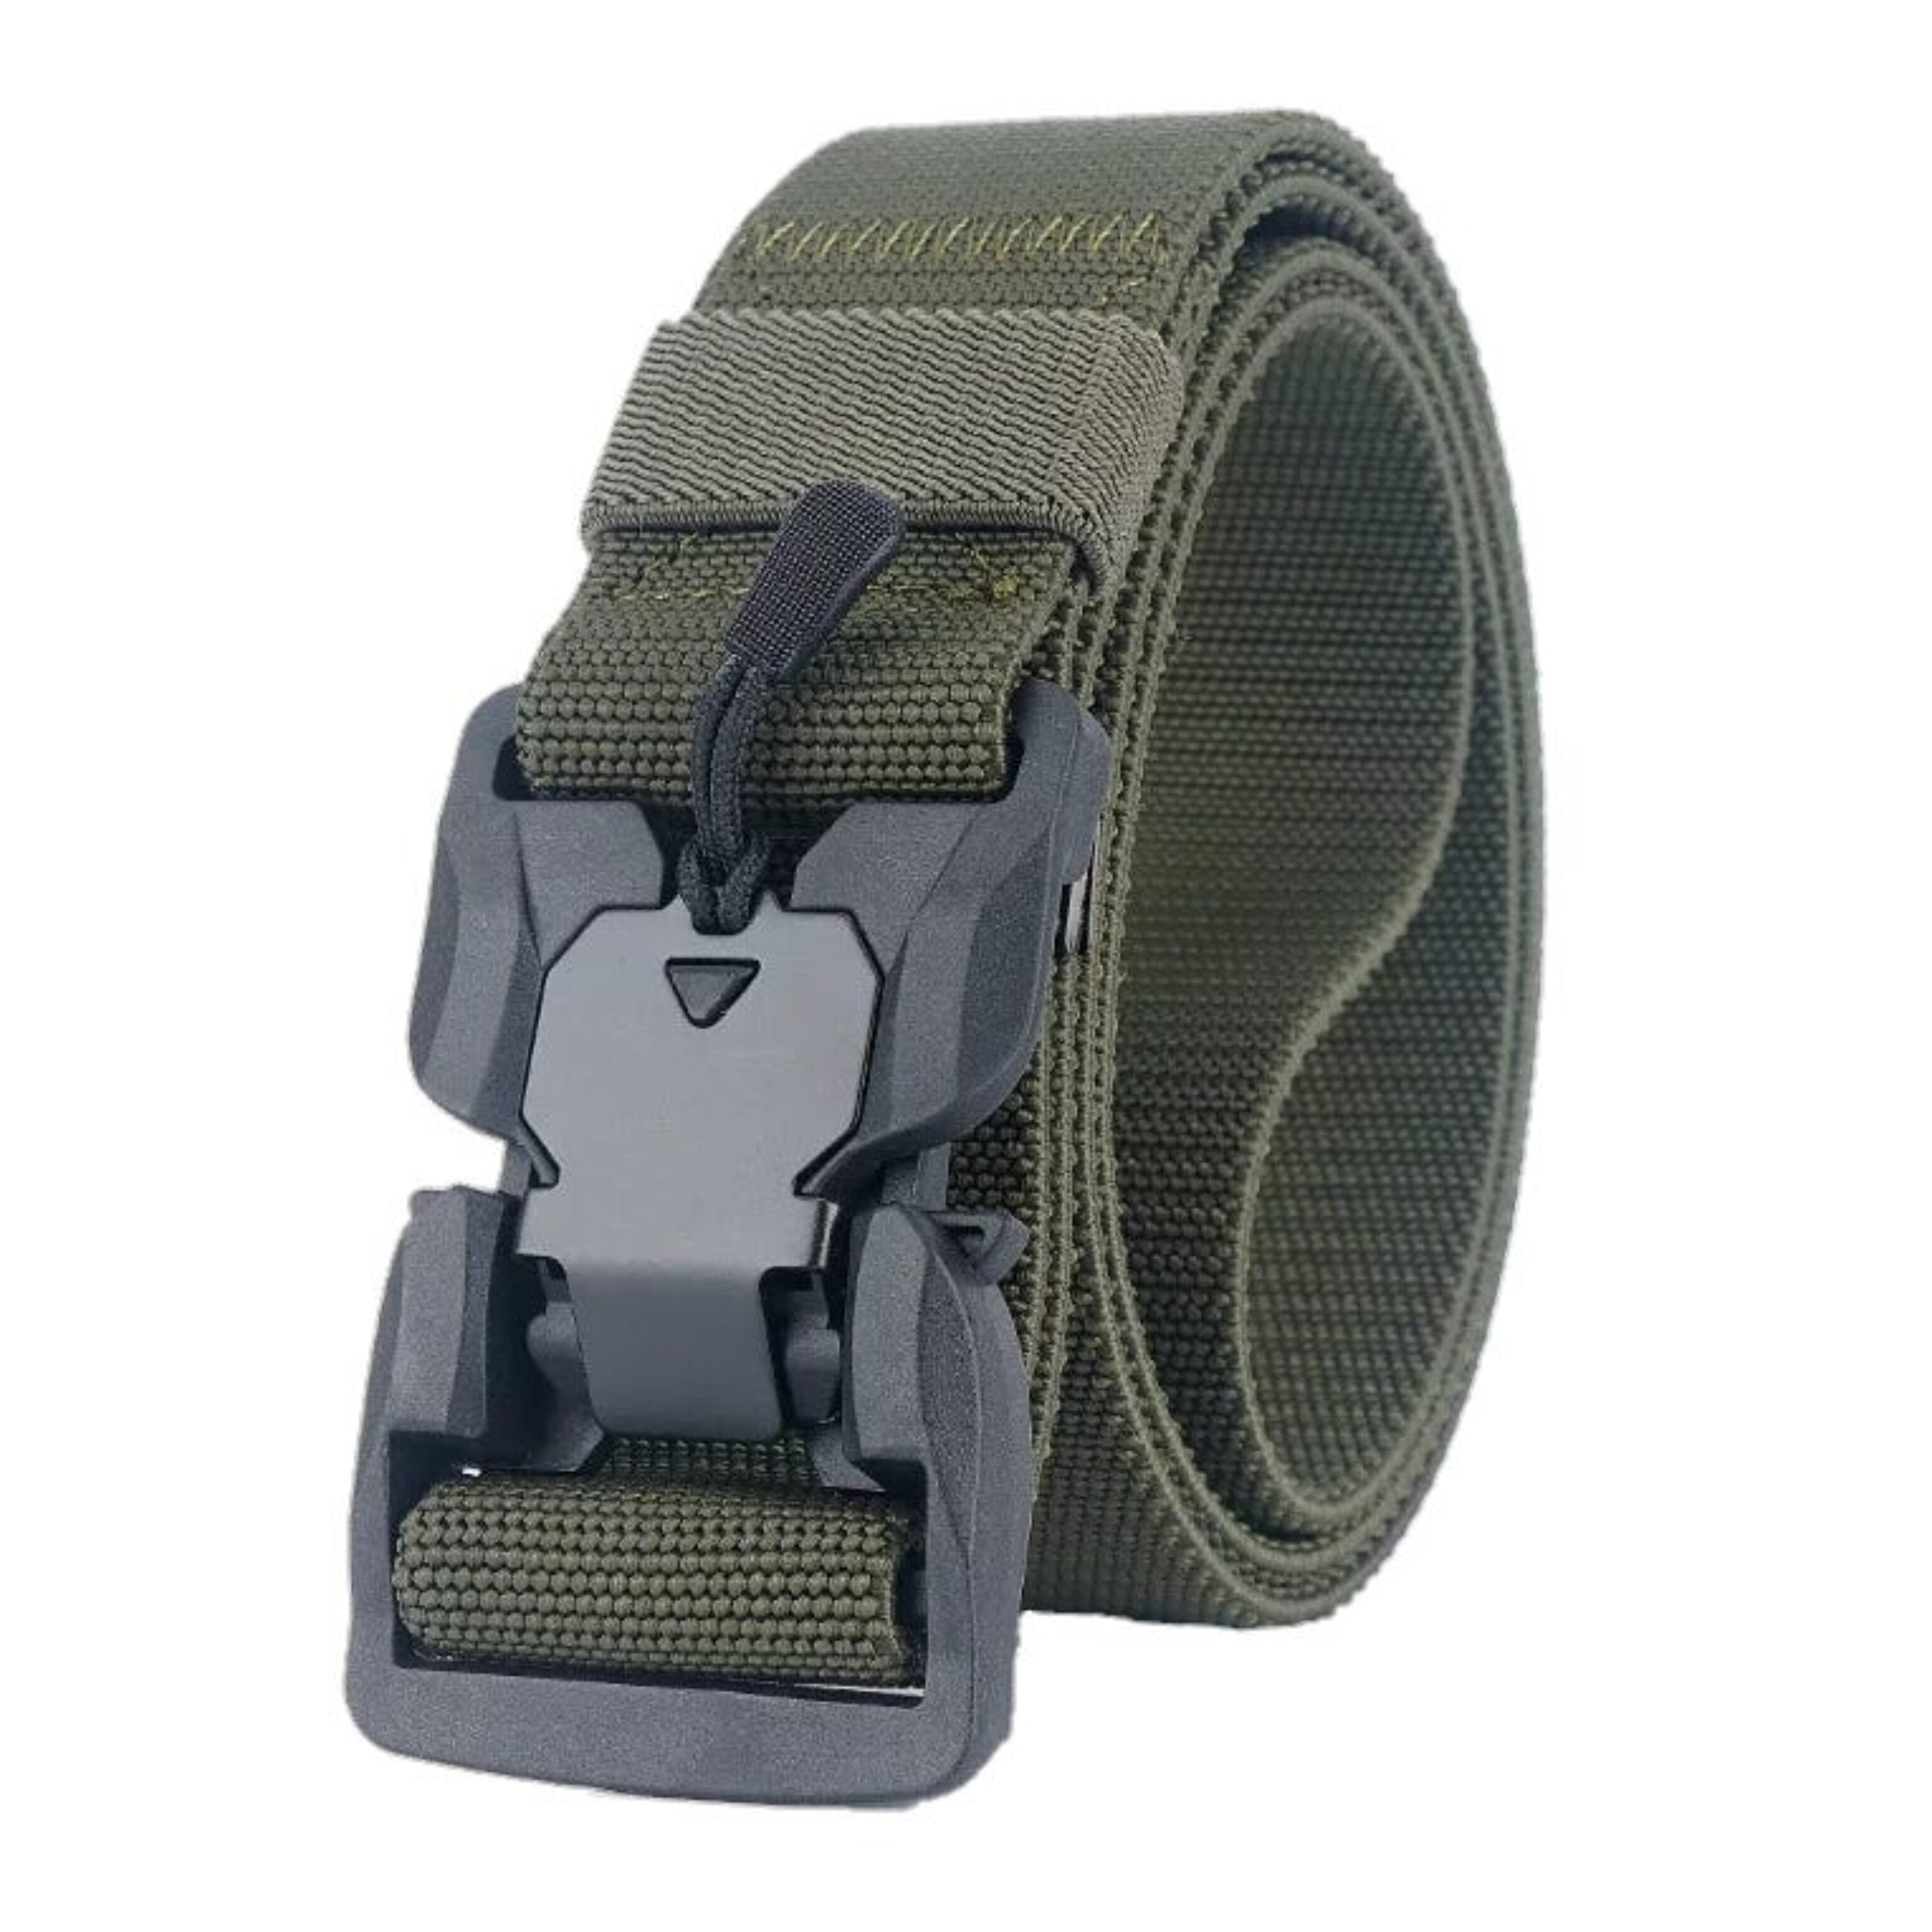 Tactical Strech Belt - Olive